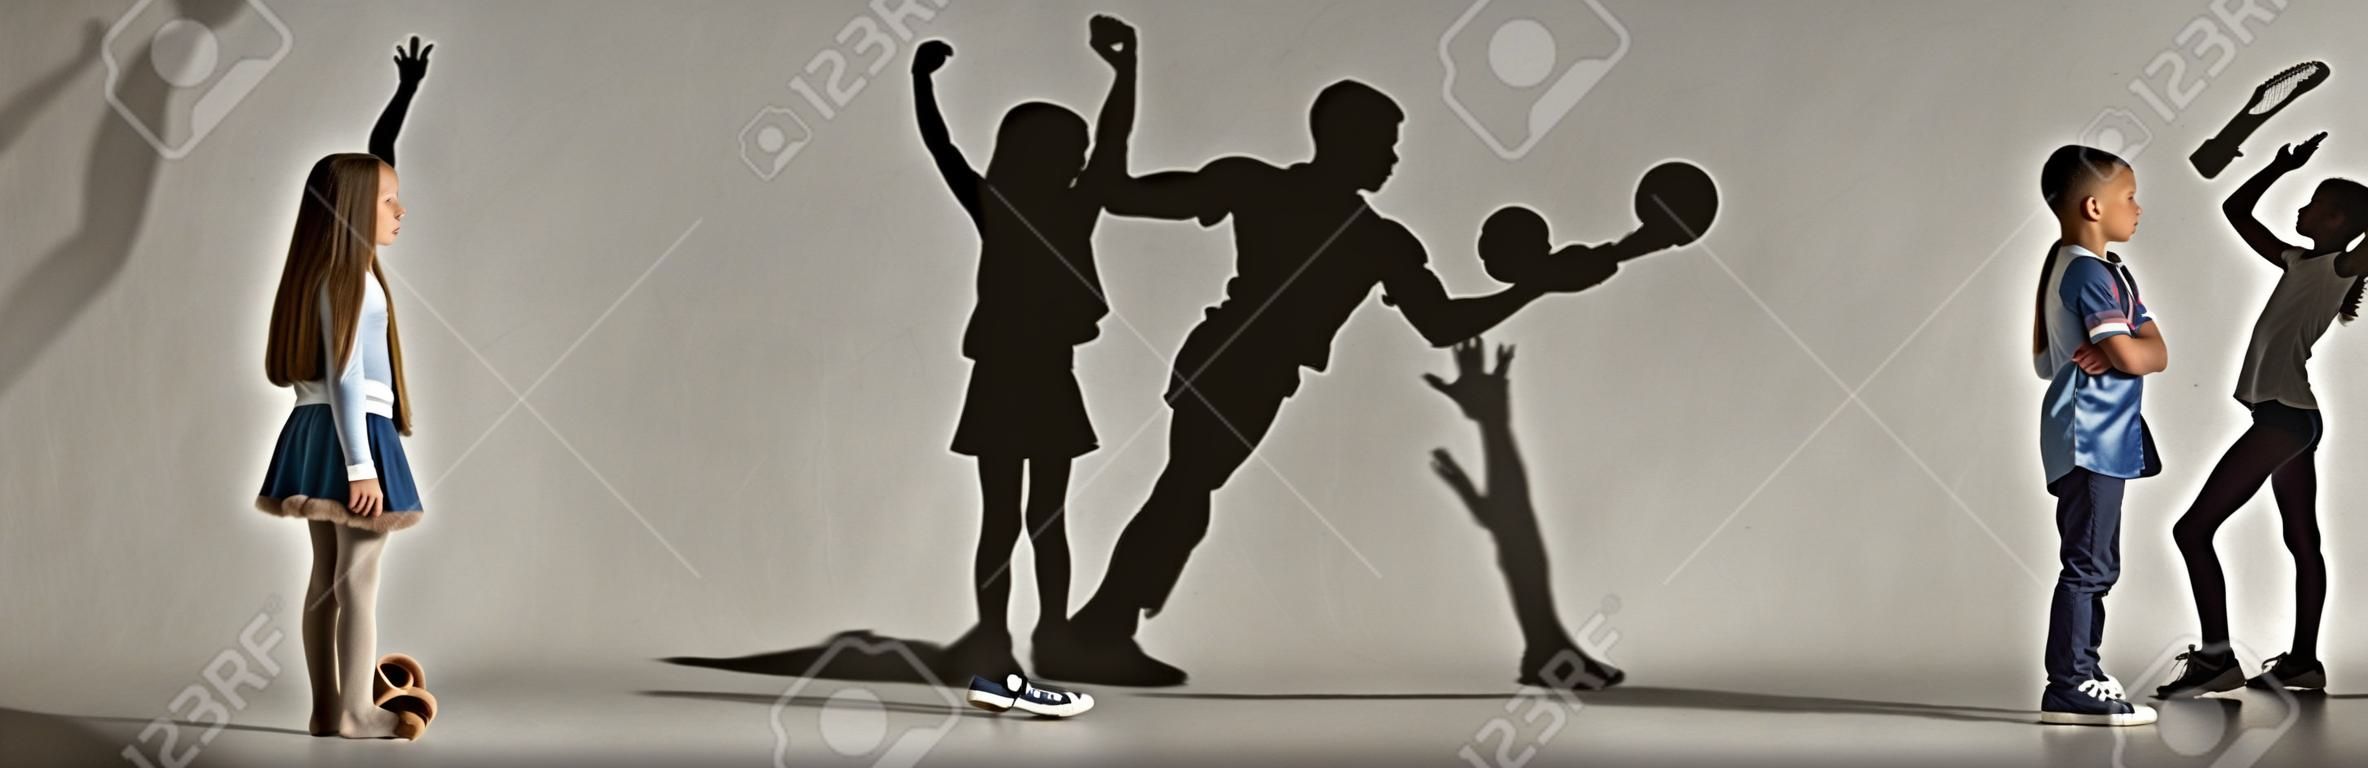 Dzieciństwo i marzenie o wielkiej i sławnej przyszłości. Obraz koncepcyjny z chłopcem i dziewczyną i cienie fit sportowca, hokeista, kulturysta, baleriny. Kreatywny kolaż wykonany z 2 modeli.